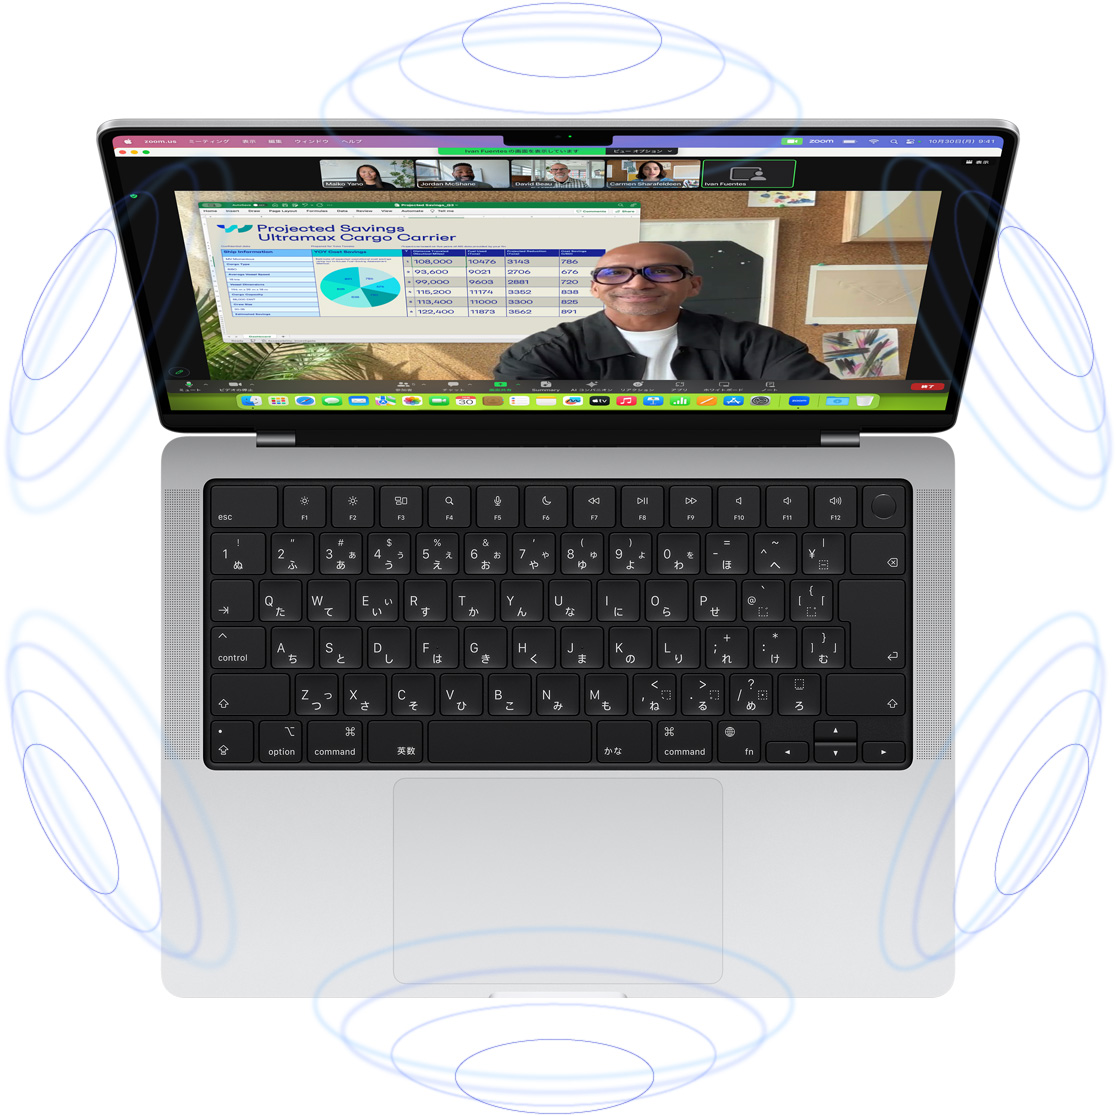 MacBook ProでのFaceTimeビデオ通話。MacBook Proを囲む複数の青い円のイラストが、空間オーディオの立体感を表している